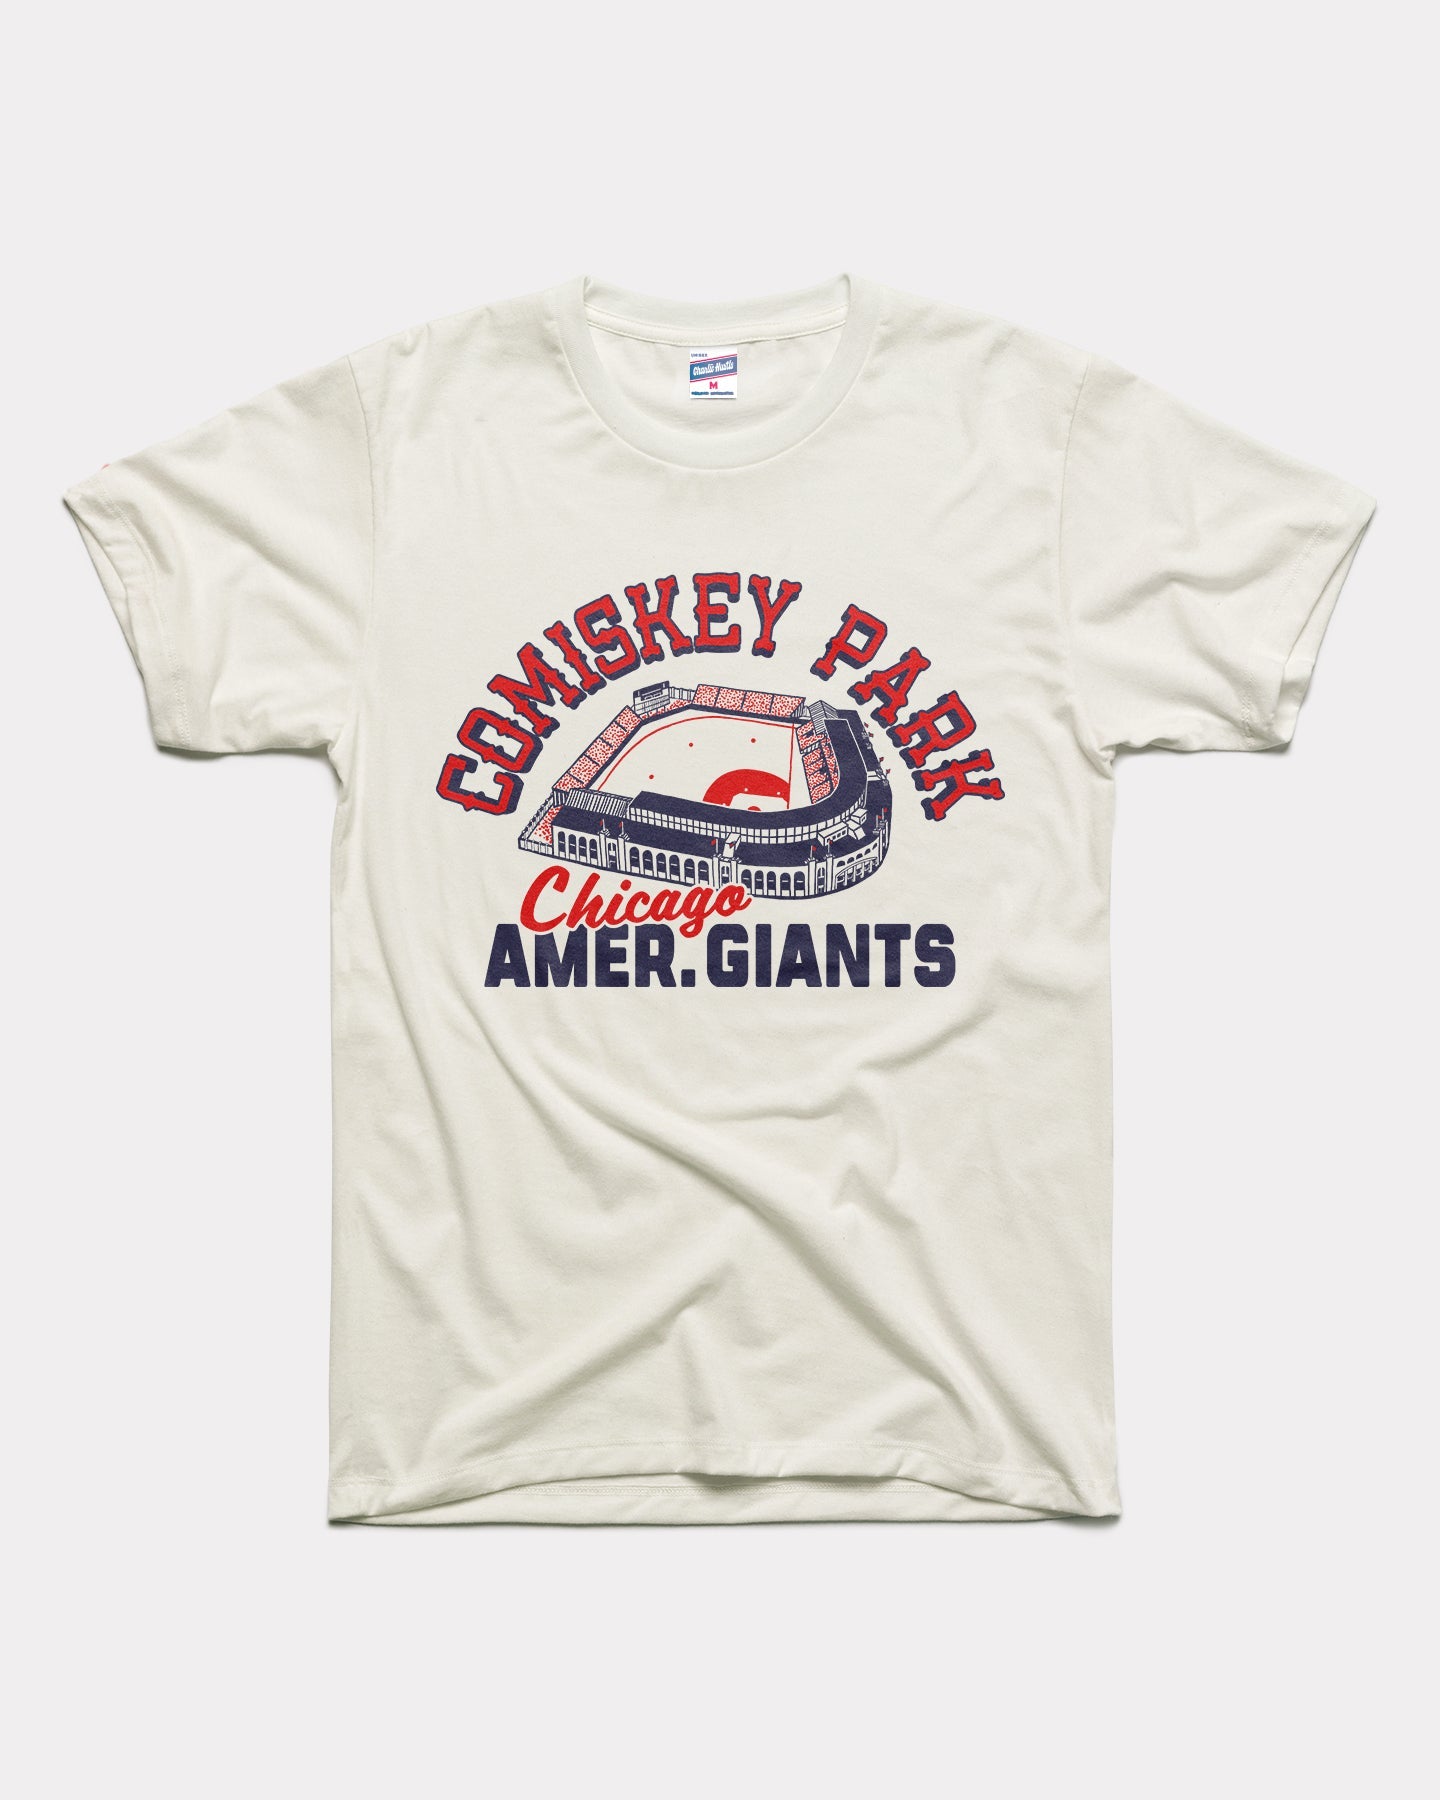 Comiskey Park Chicago Amer. Giants White T-Shirt | Charlie Hustle 31 / XXL